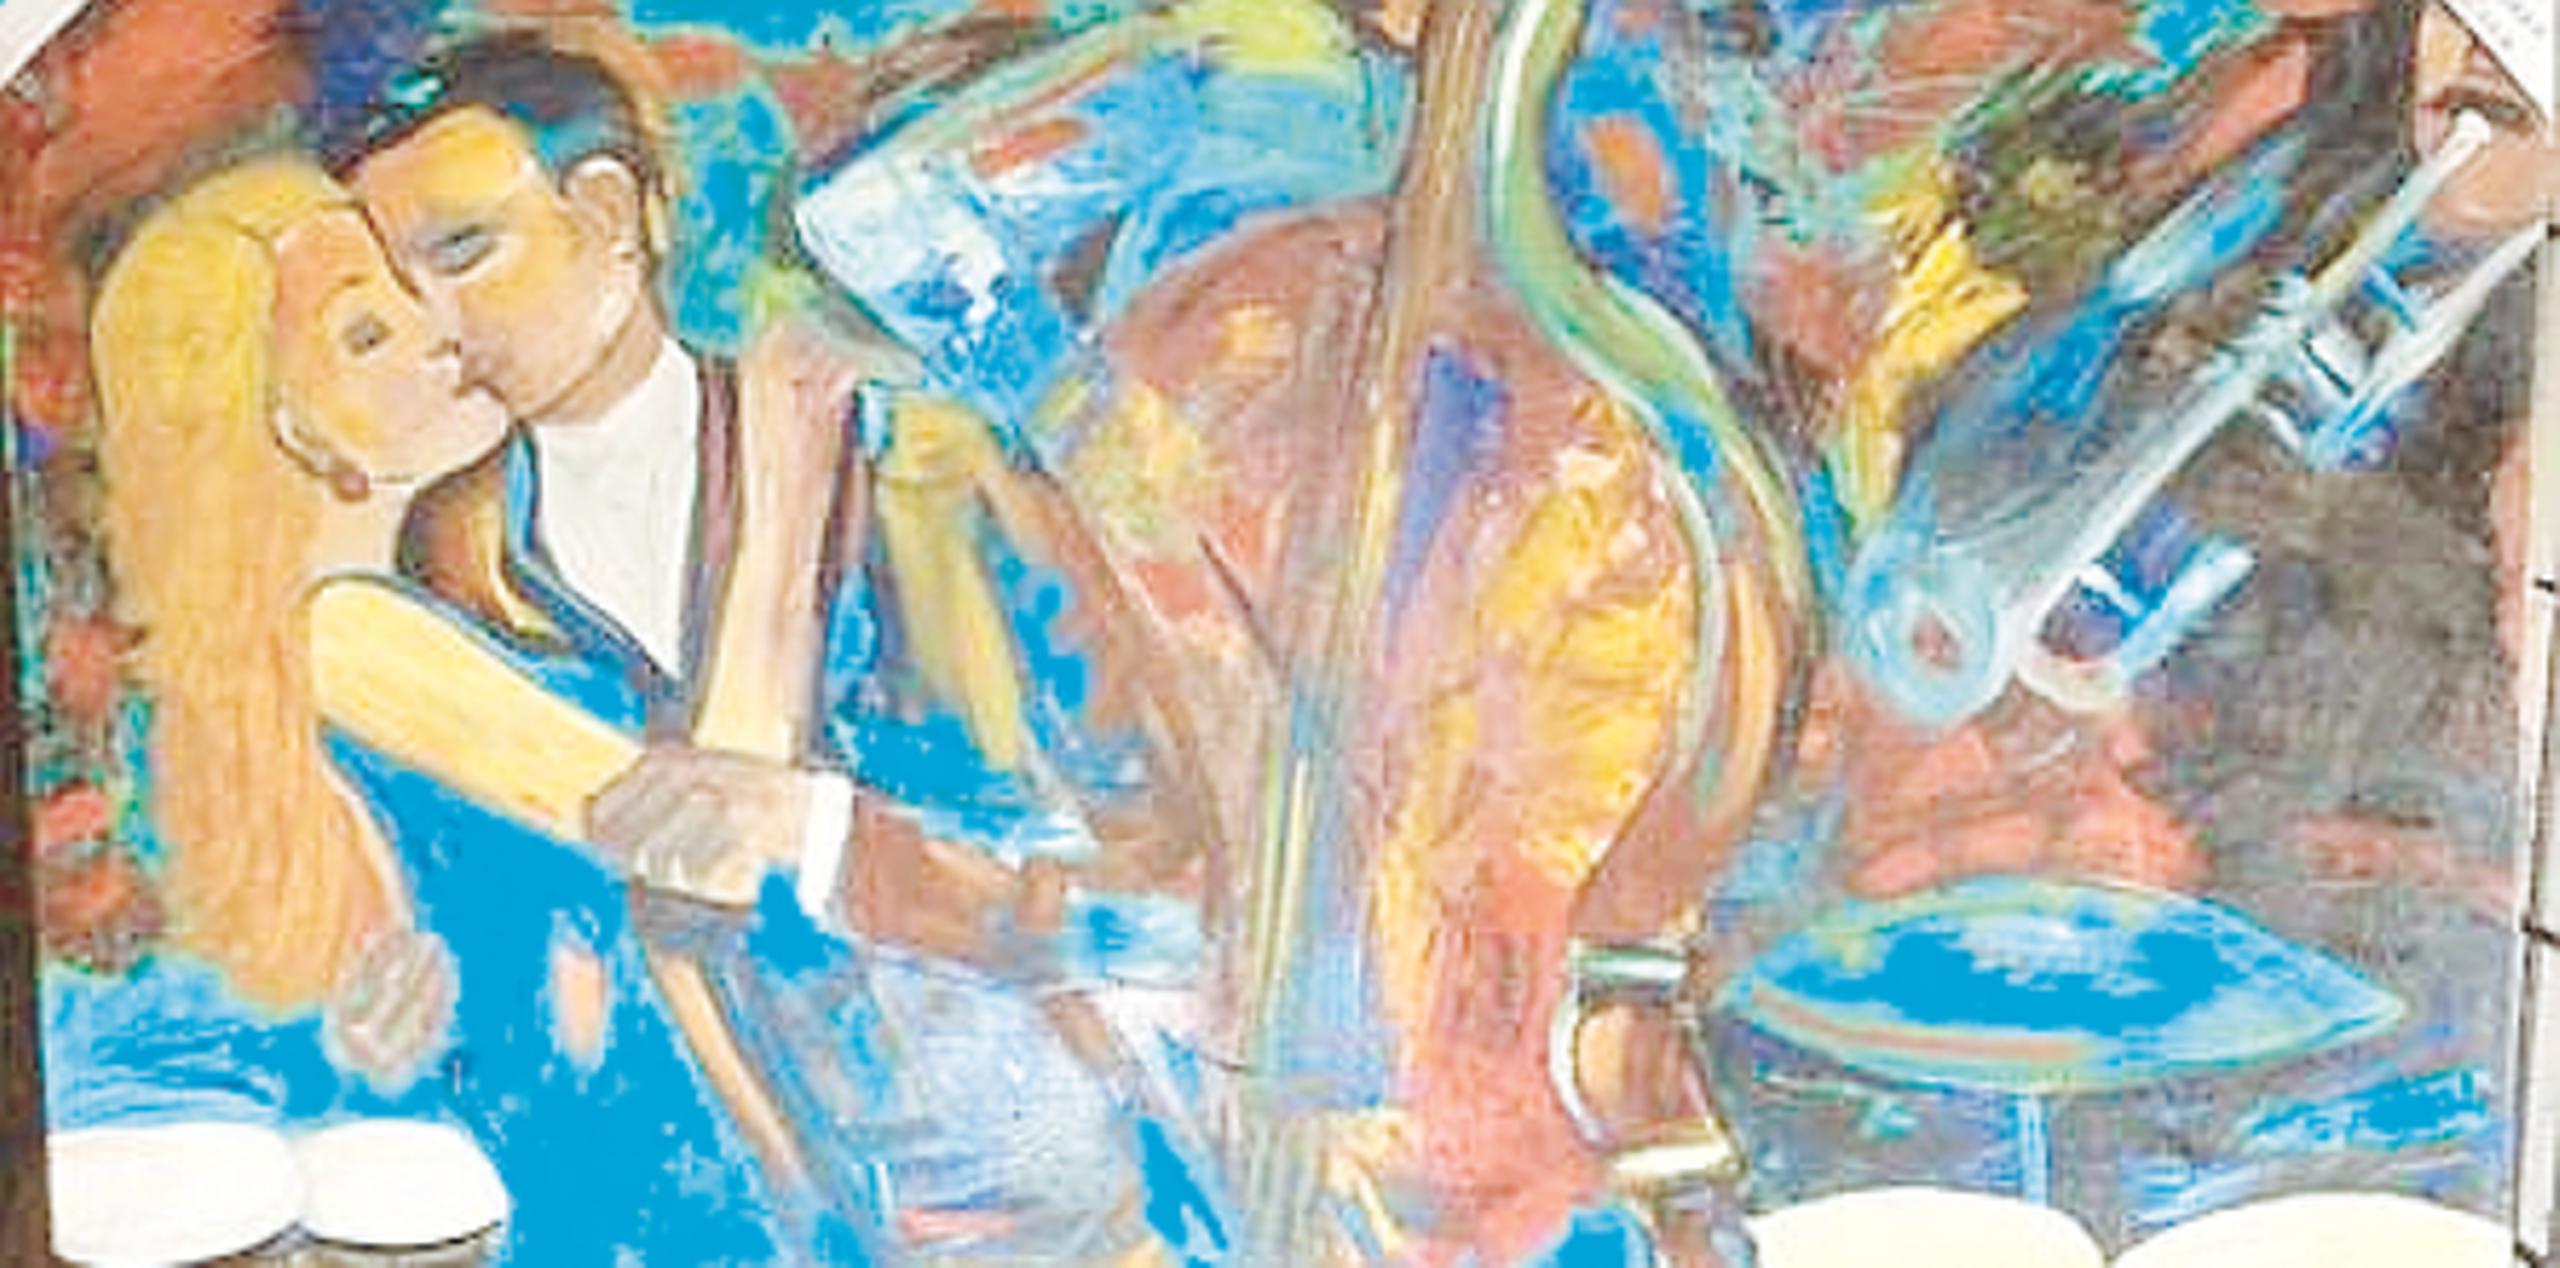 Las pinturas que forman parte de la colección “Ritmo y Emociones del Corazón” retratan a músicos en pleno escenario, rostros y paisajes. (Suministrada)